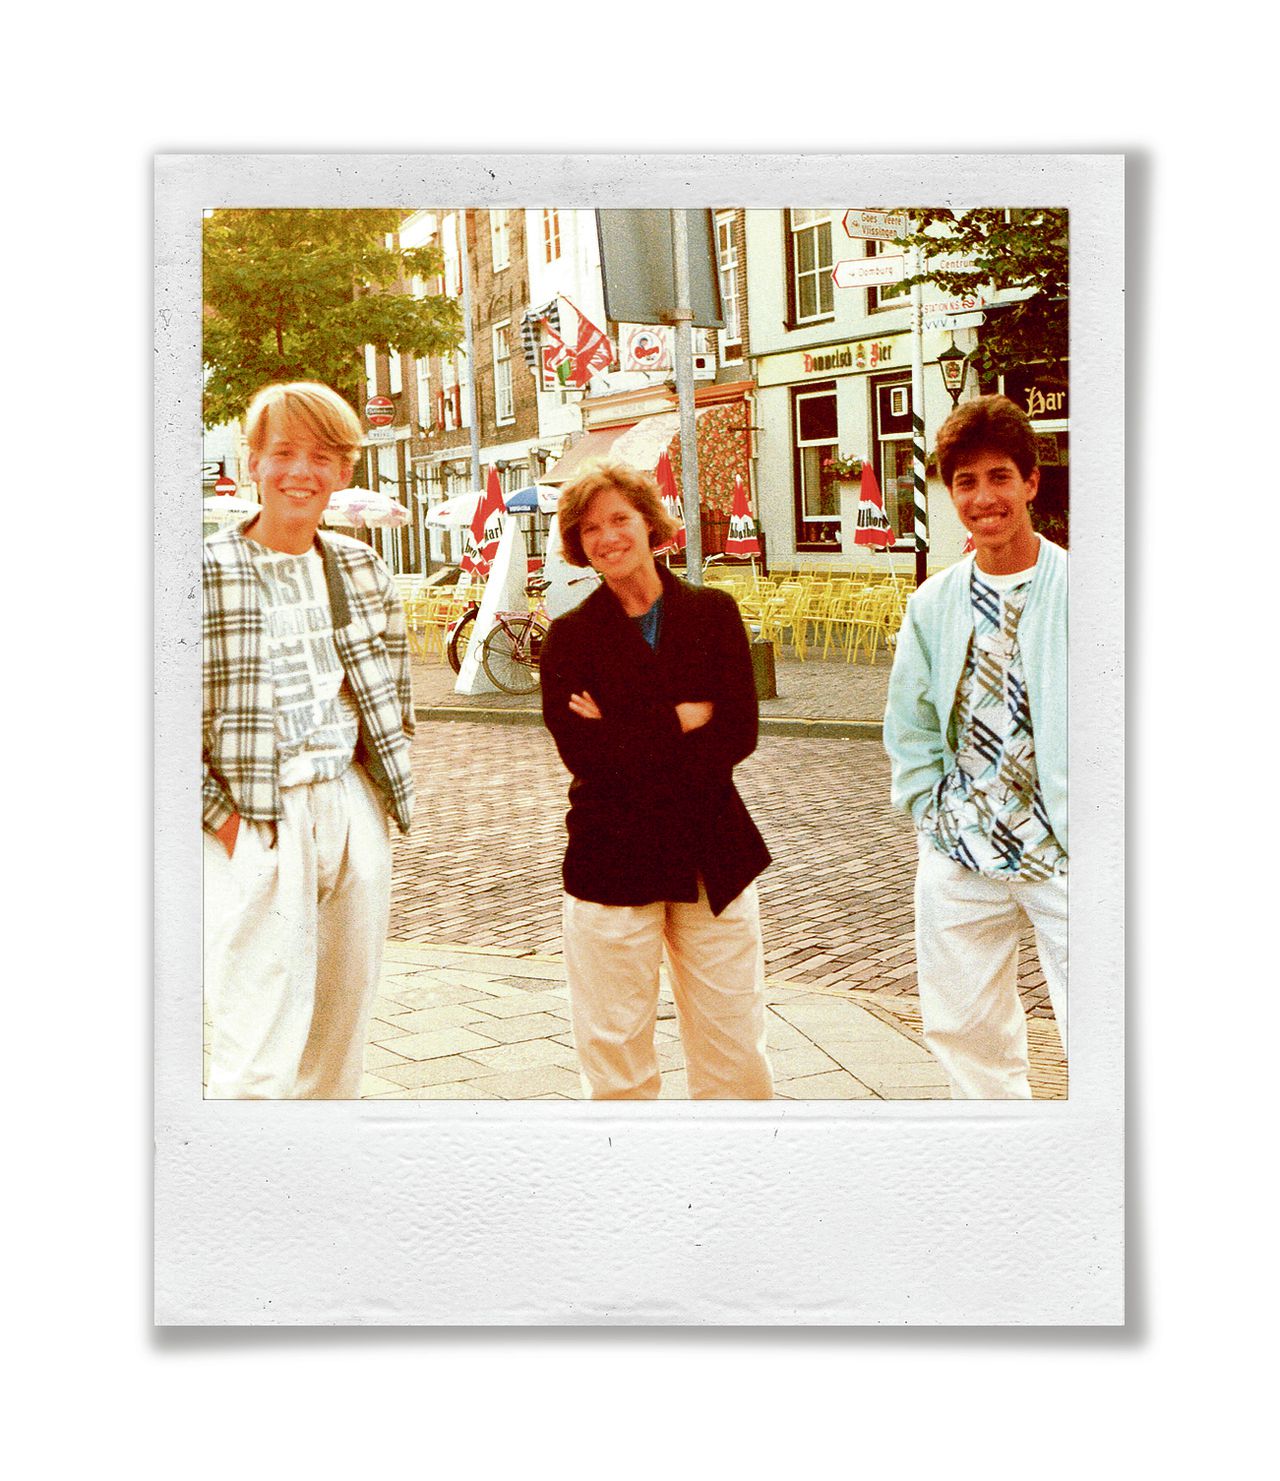 Erik Jan Harmens (l), zijn stiefmoeder Gerda Hendriks (m) en vriend David de Jong, Goes 1985.